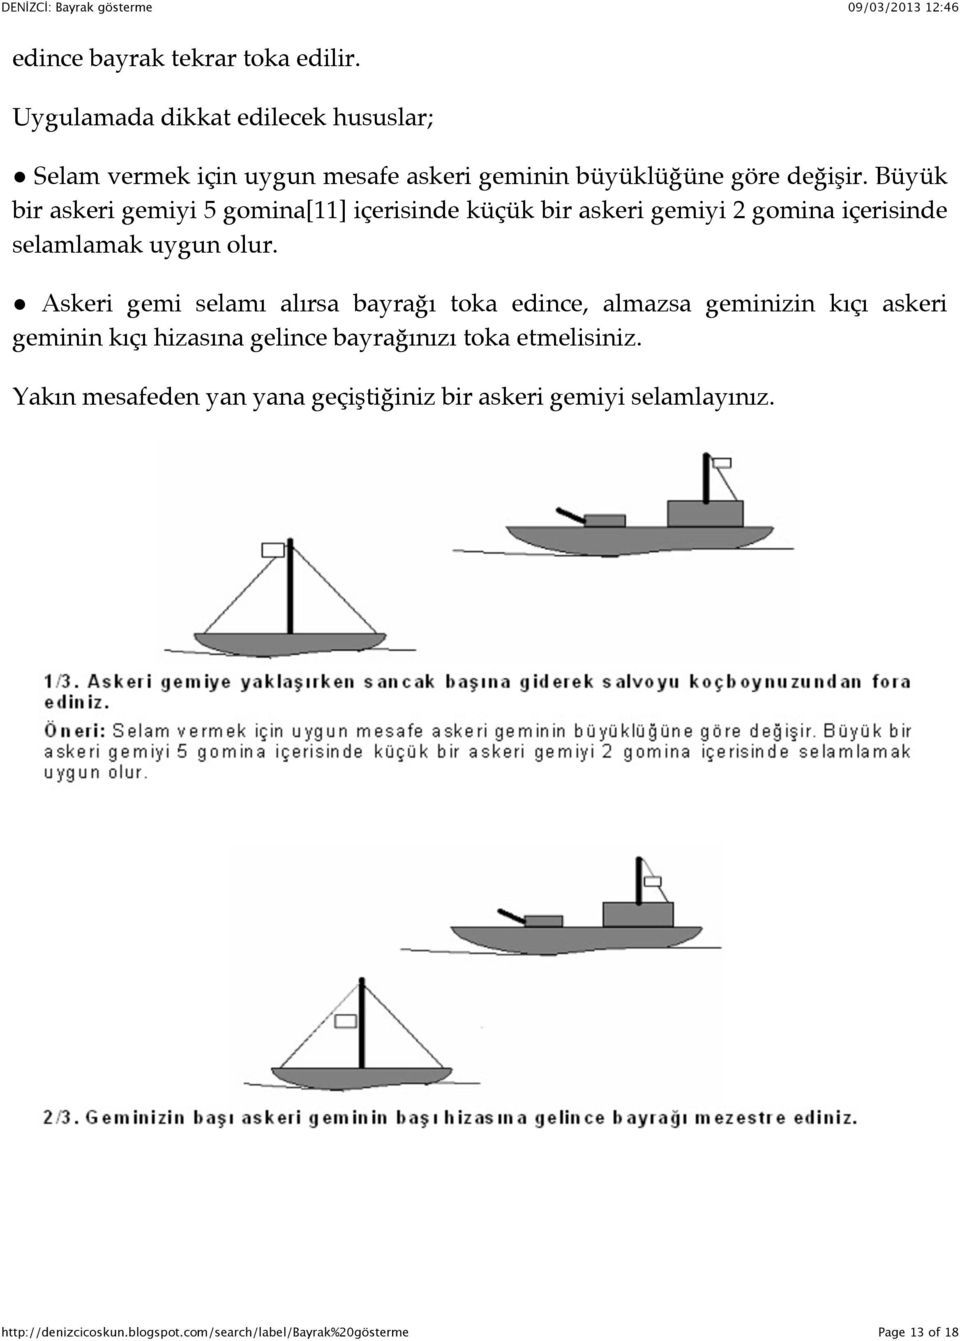 Büyük bir askeri gemiyi 5 gomina[11] içerisinde küçük bir askeri gemiyi 2 gomina içerisinde selamlamak uygun olur.